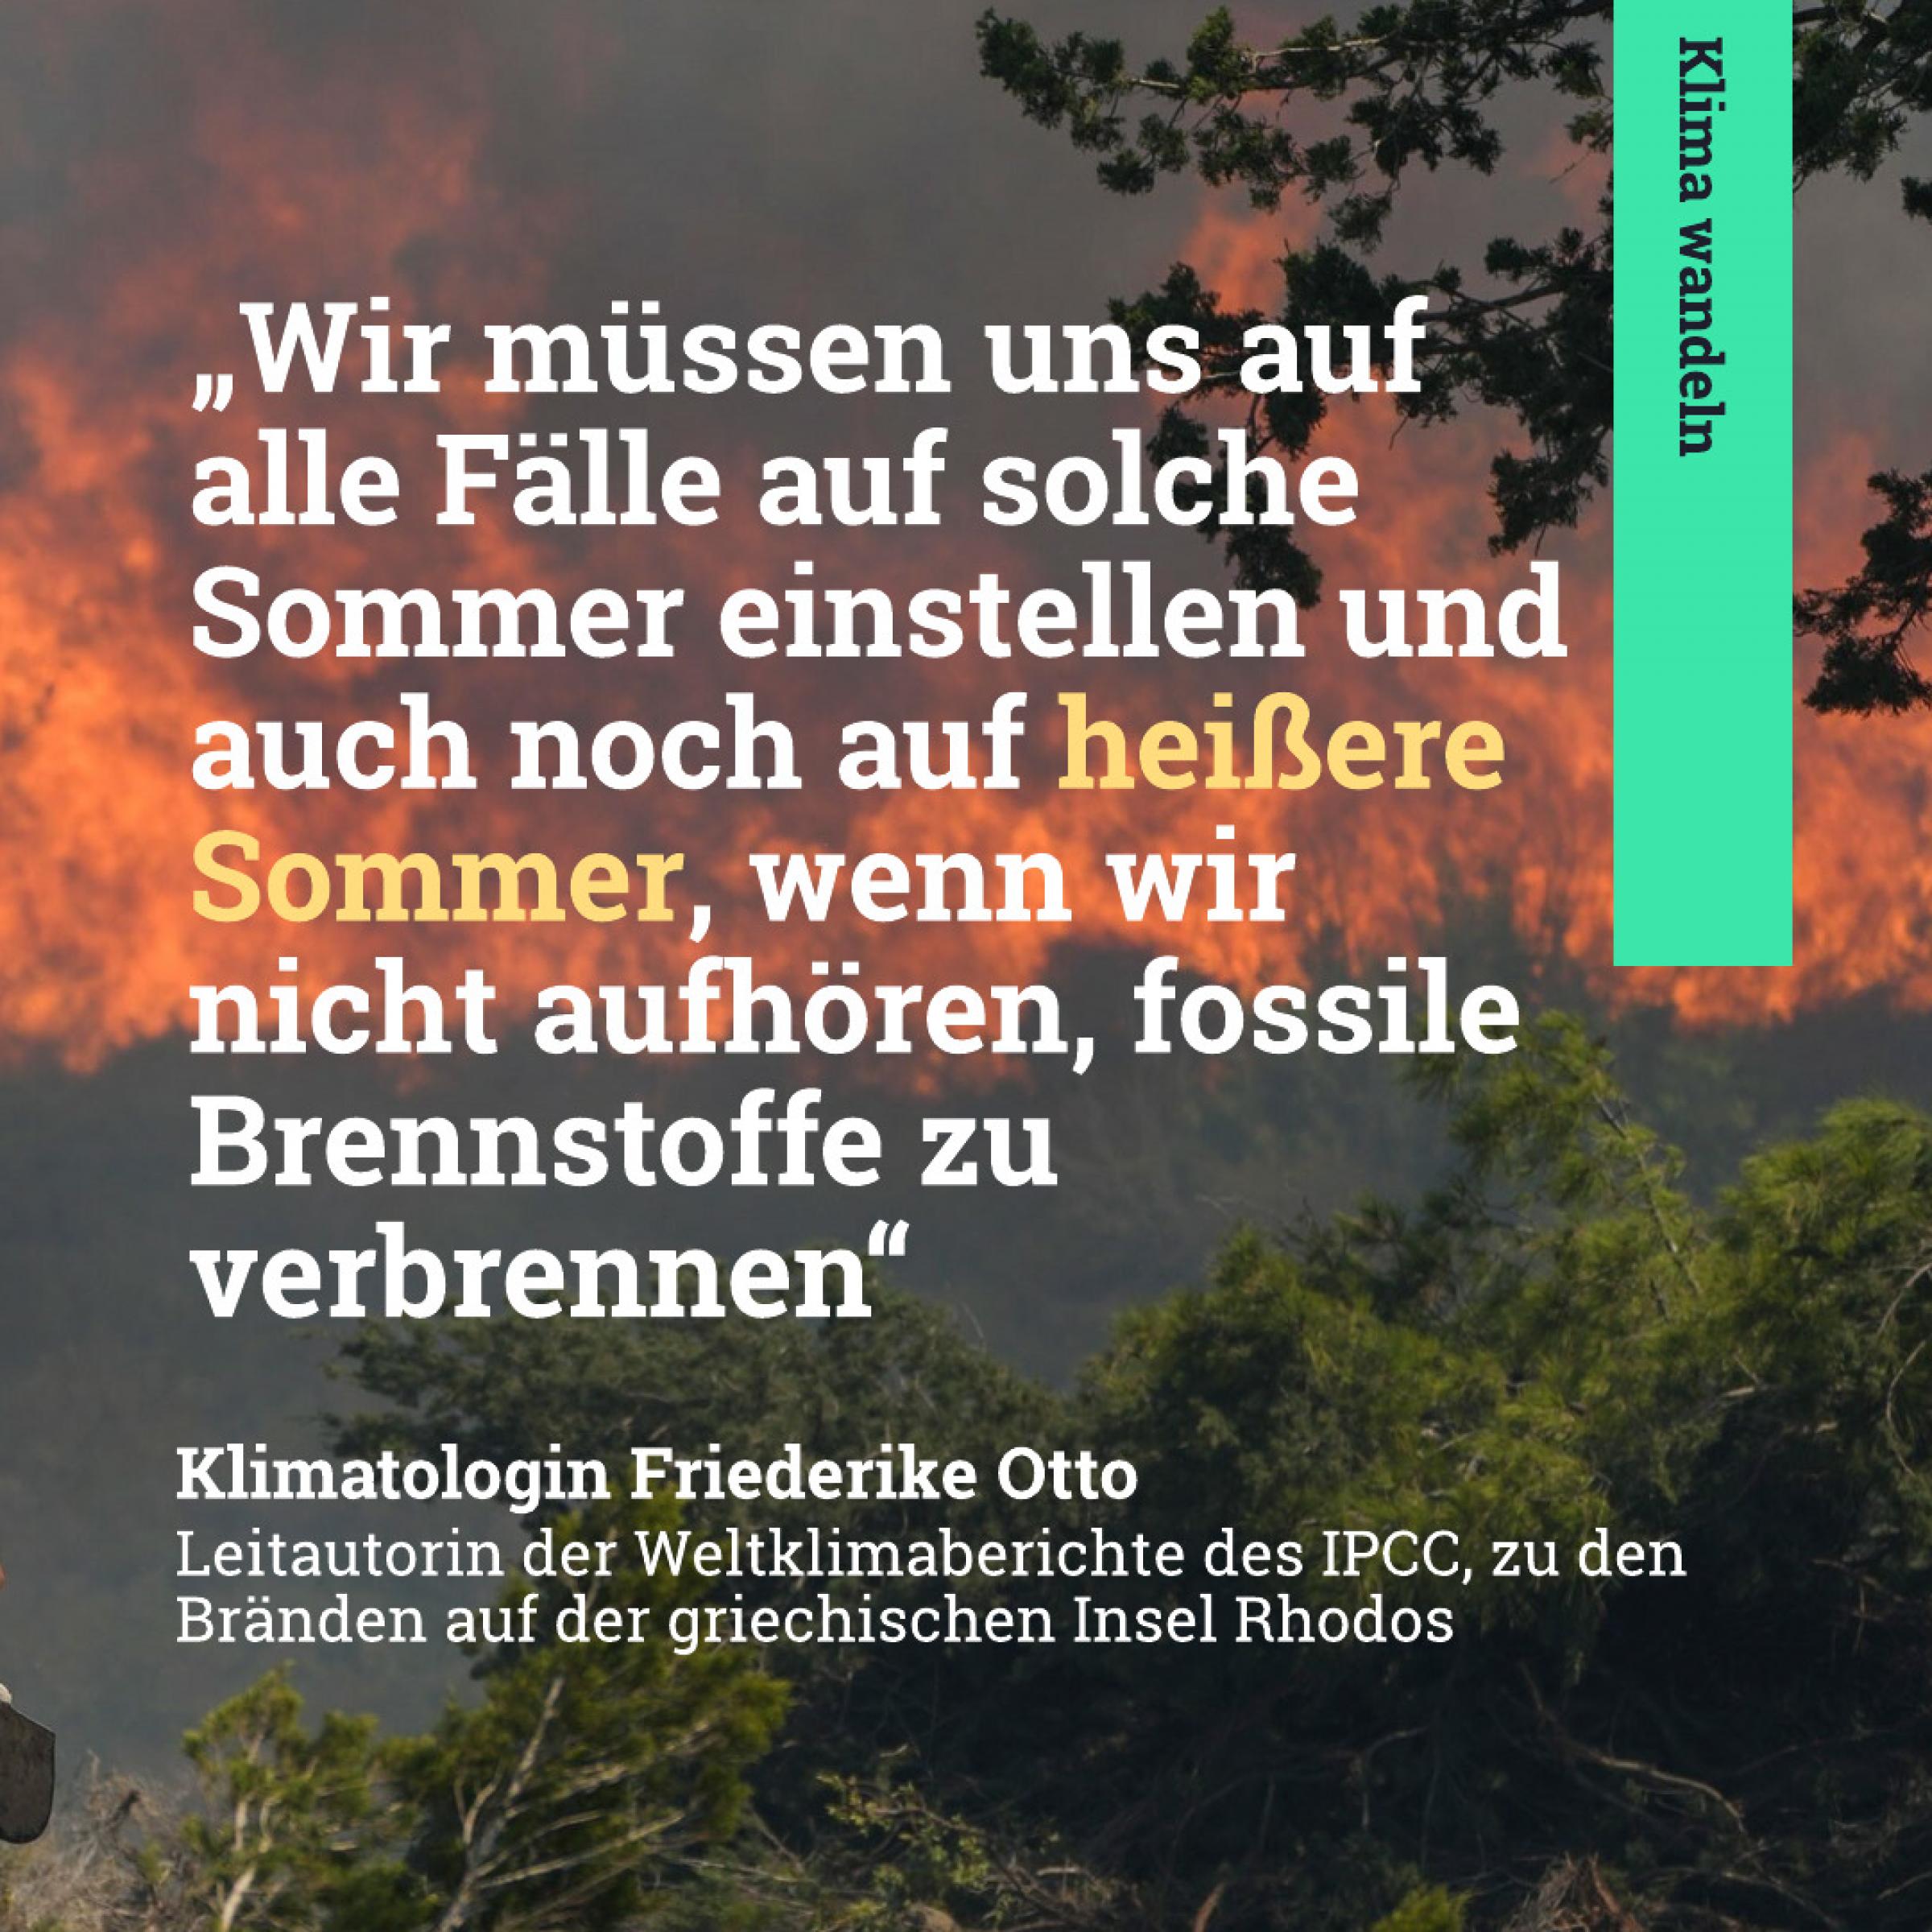 Wir müssen uns auf alle Fälle auf solche Sommer einstellen und auch noch auf heißere Sommer, wenn wir nicht aufhören, fossile Brennstoffe zu verbrennen. – Klimatologen Friederike Otto